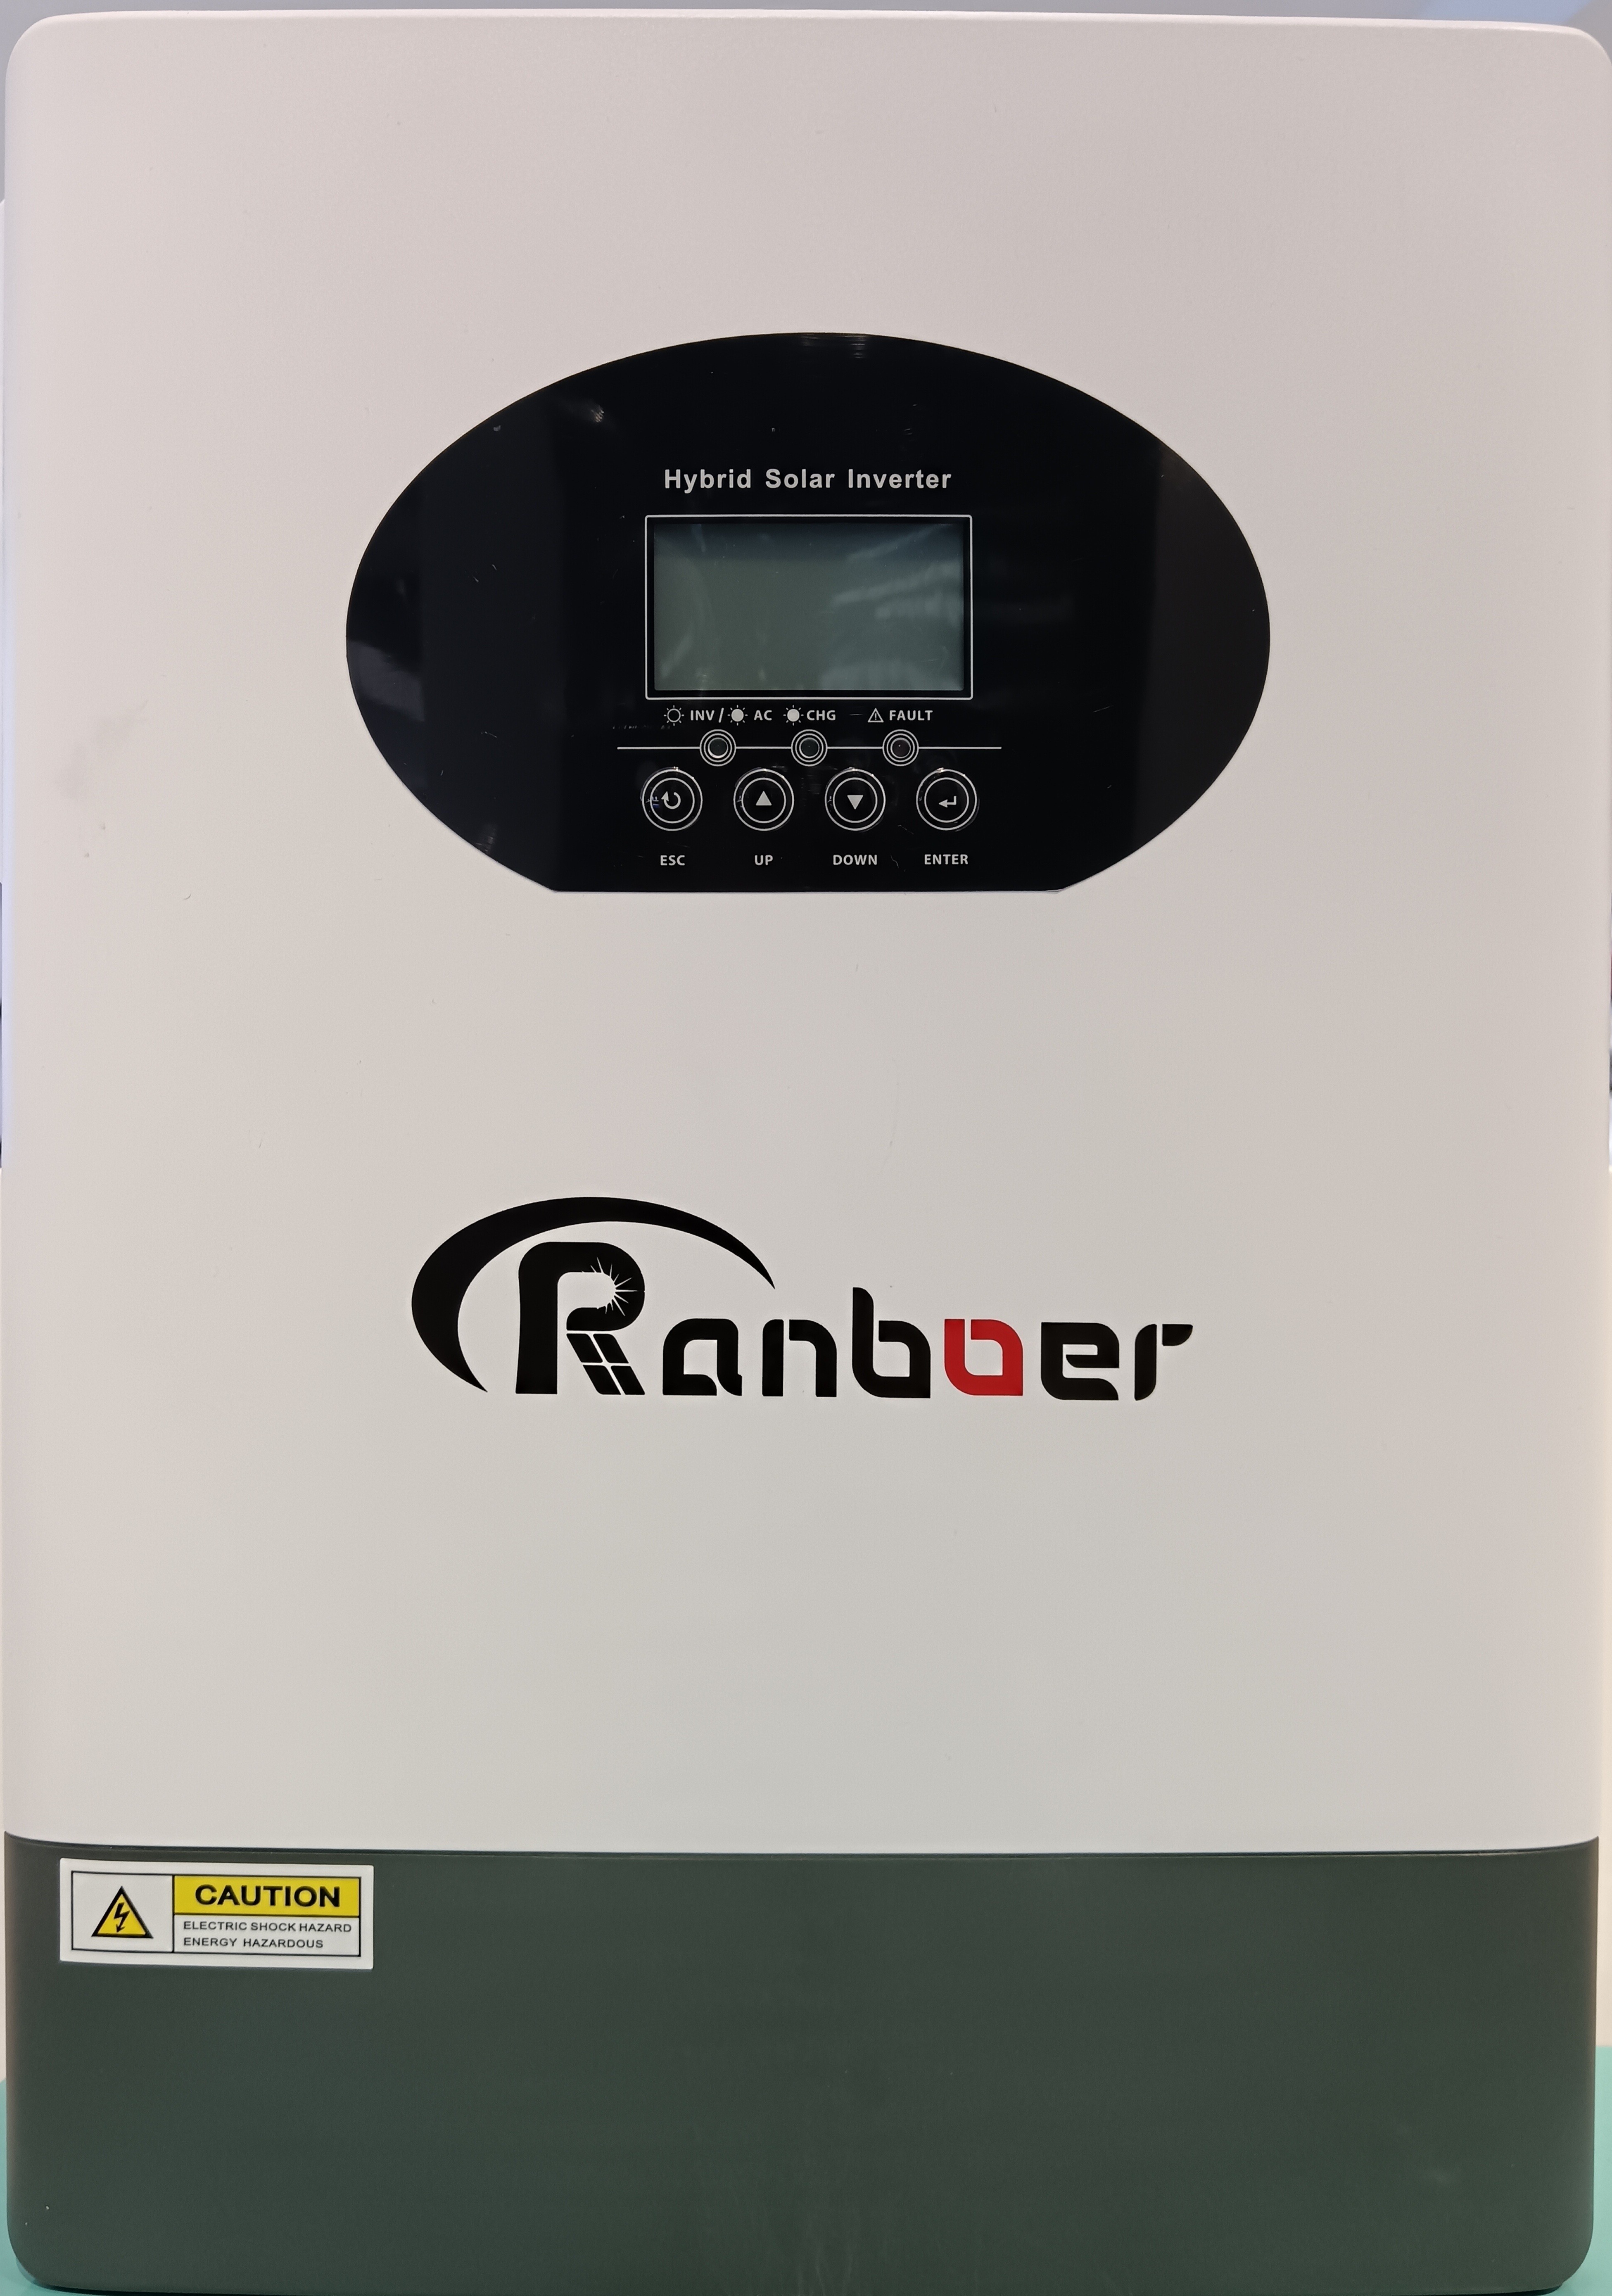 Ranboer润博离网逆变器5.5KW光伏转换器控制器一体机